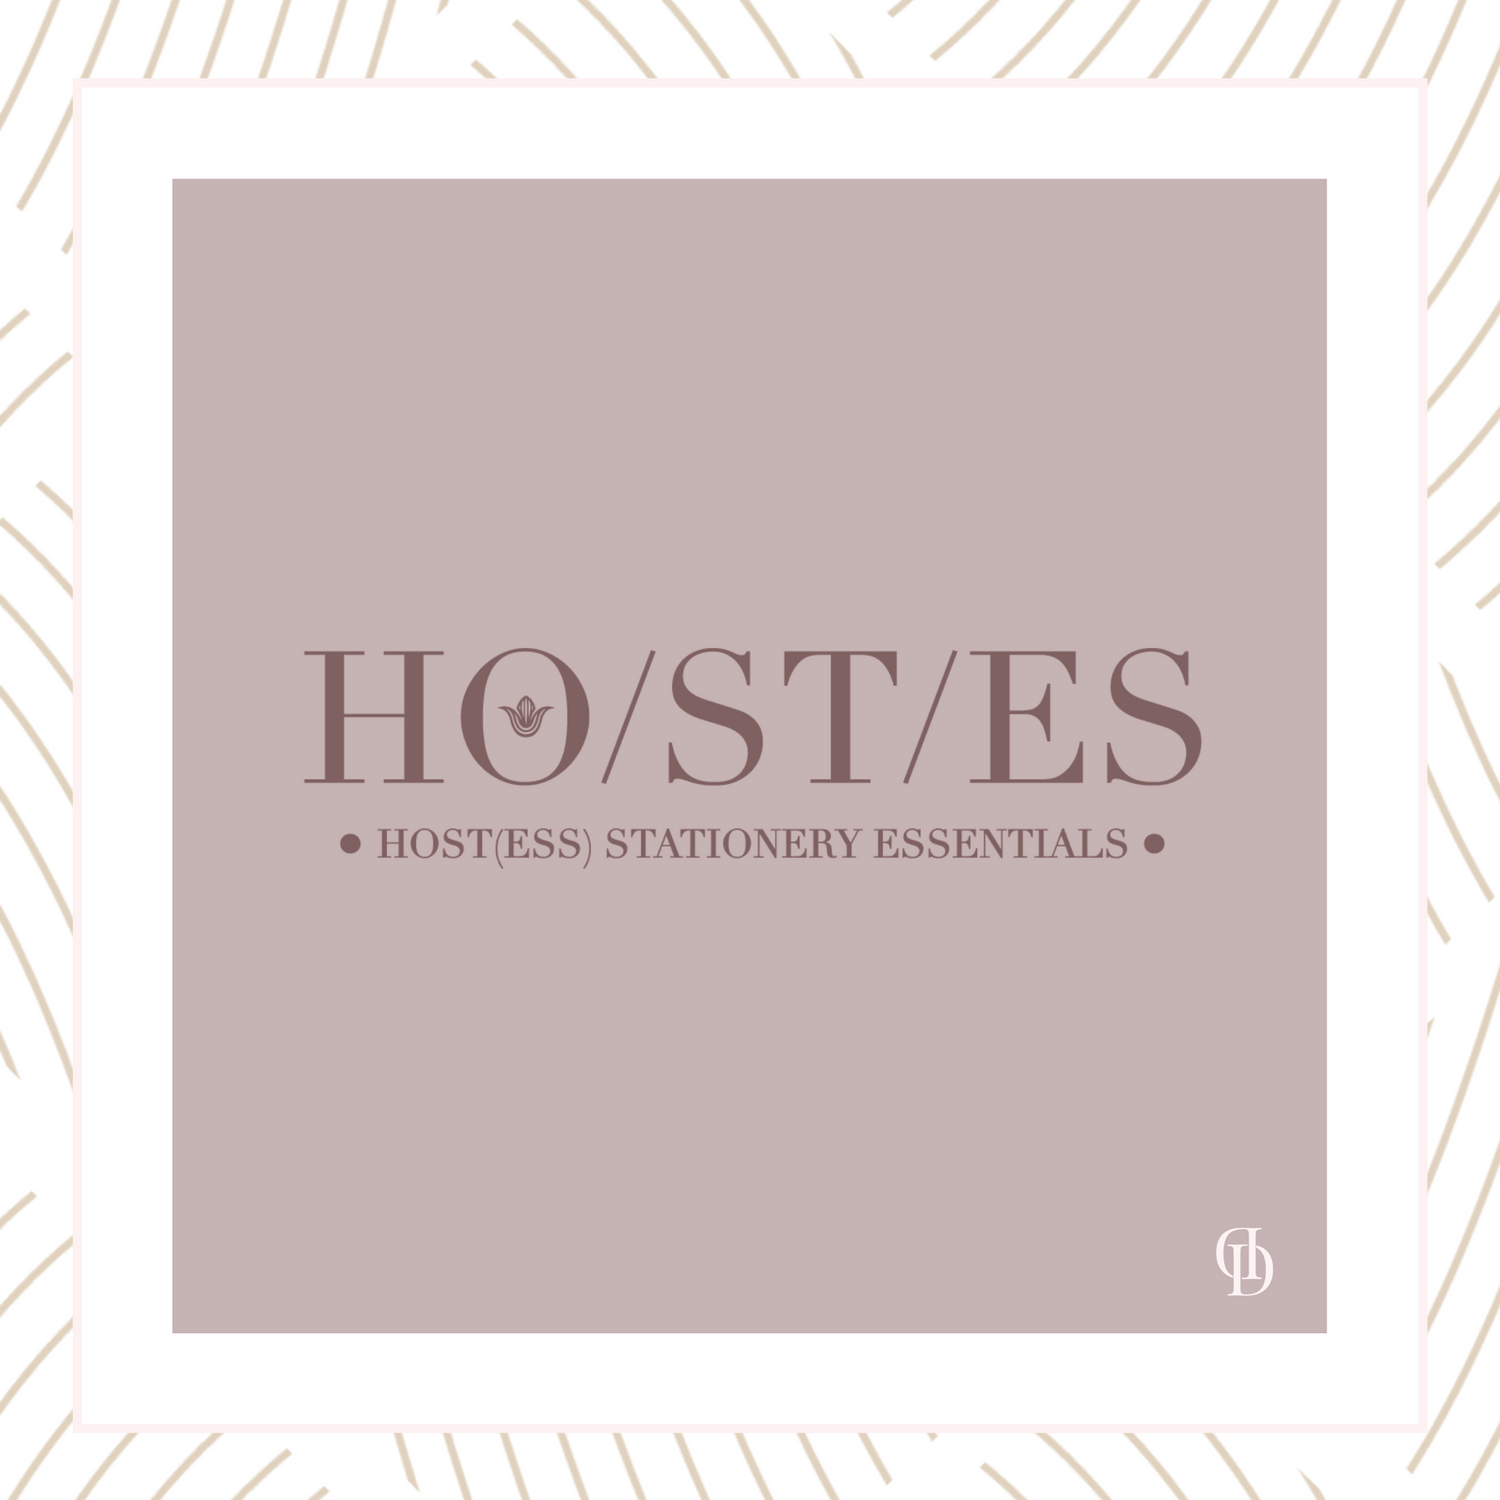 HO/ST/ES™ Hostess Stationery Essentials